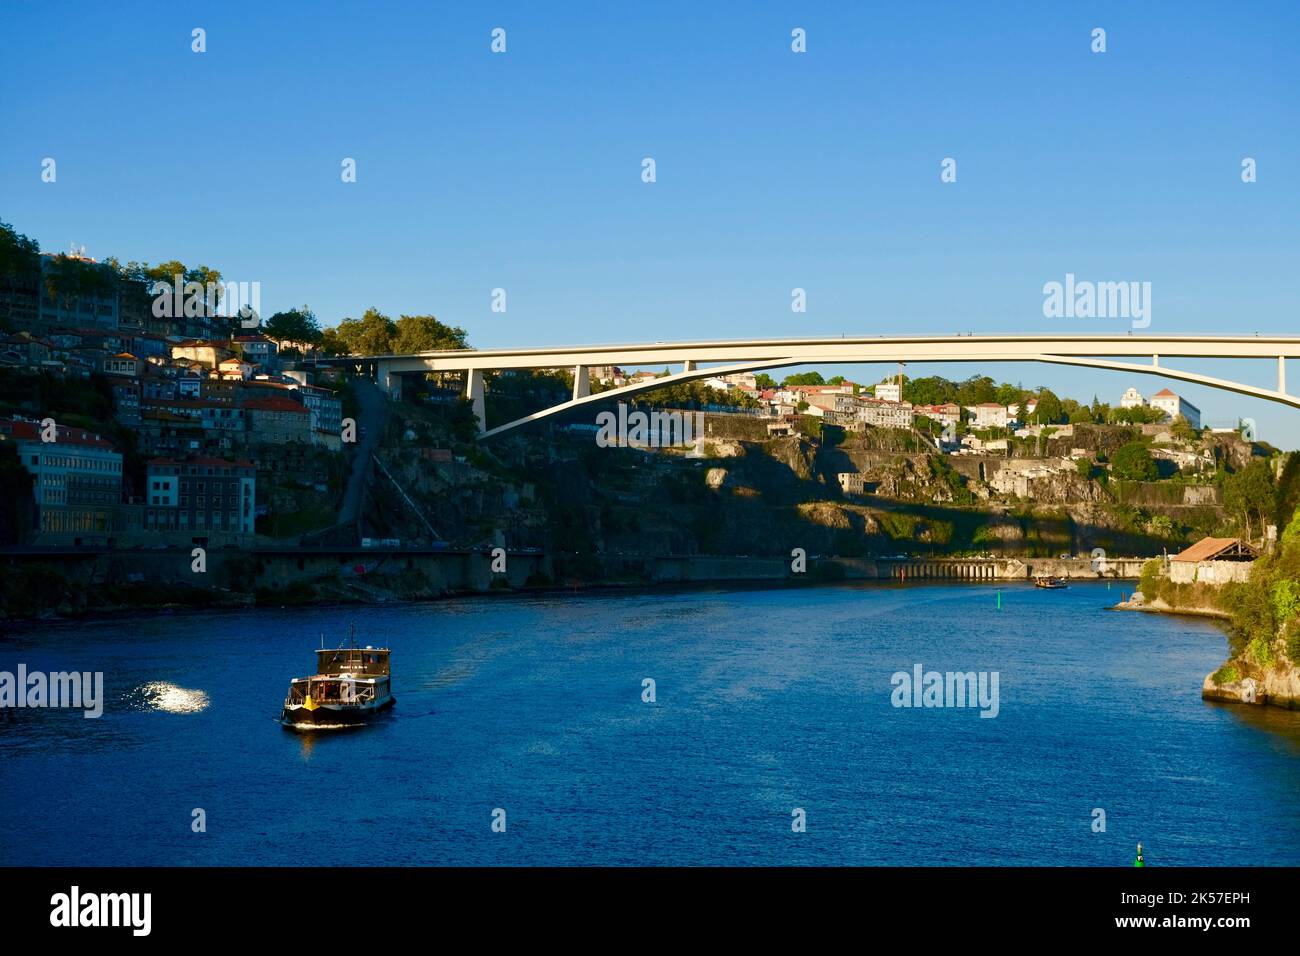 Portugal, North region, Porto, the Douro river and the Infante Dom Henrique bridge Stock Photo